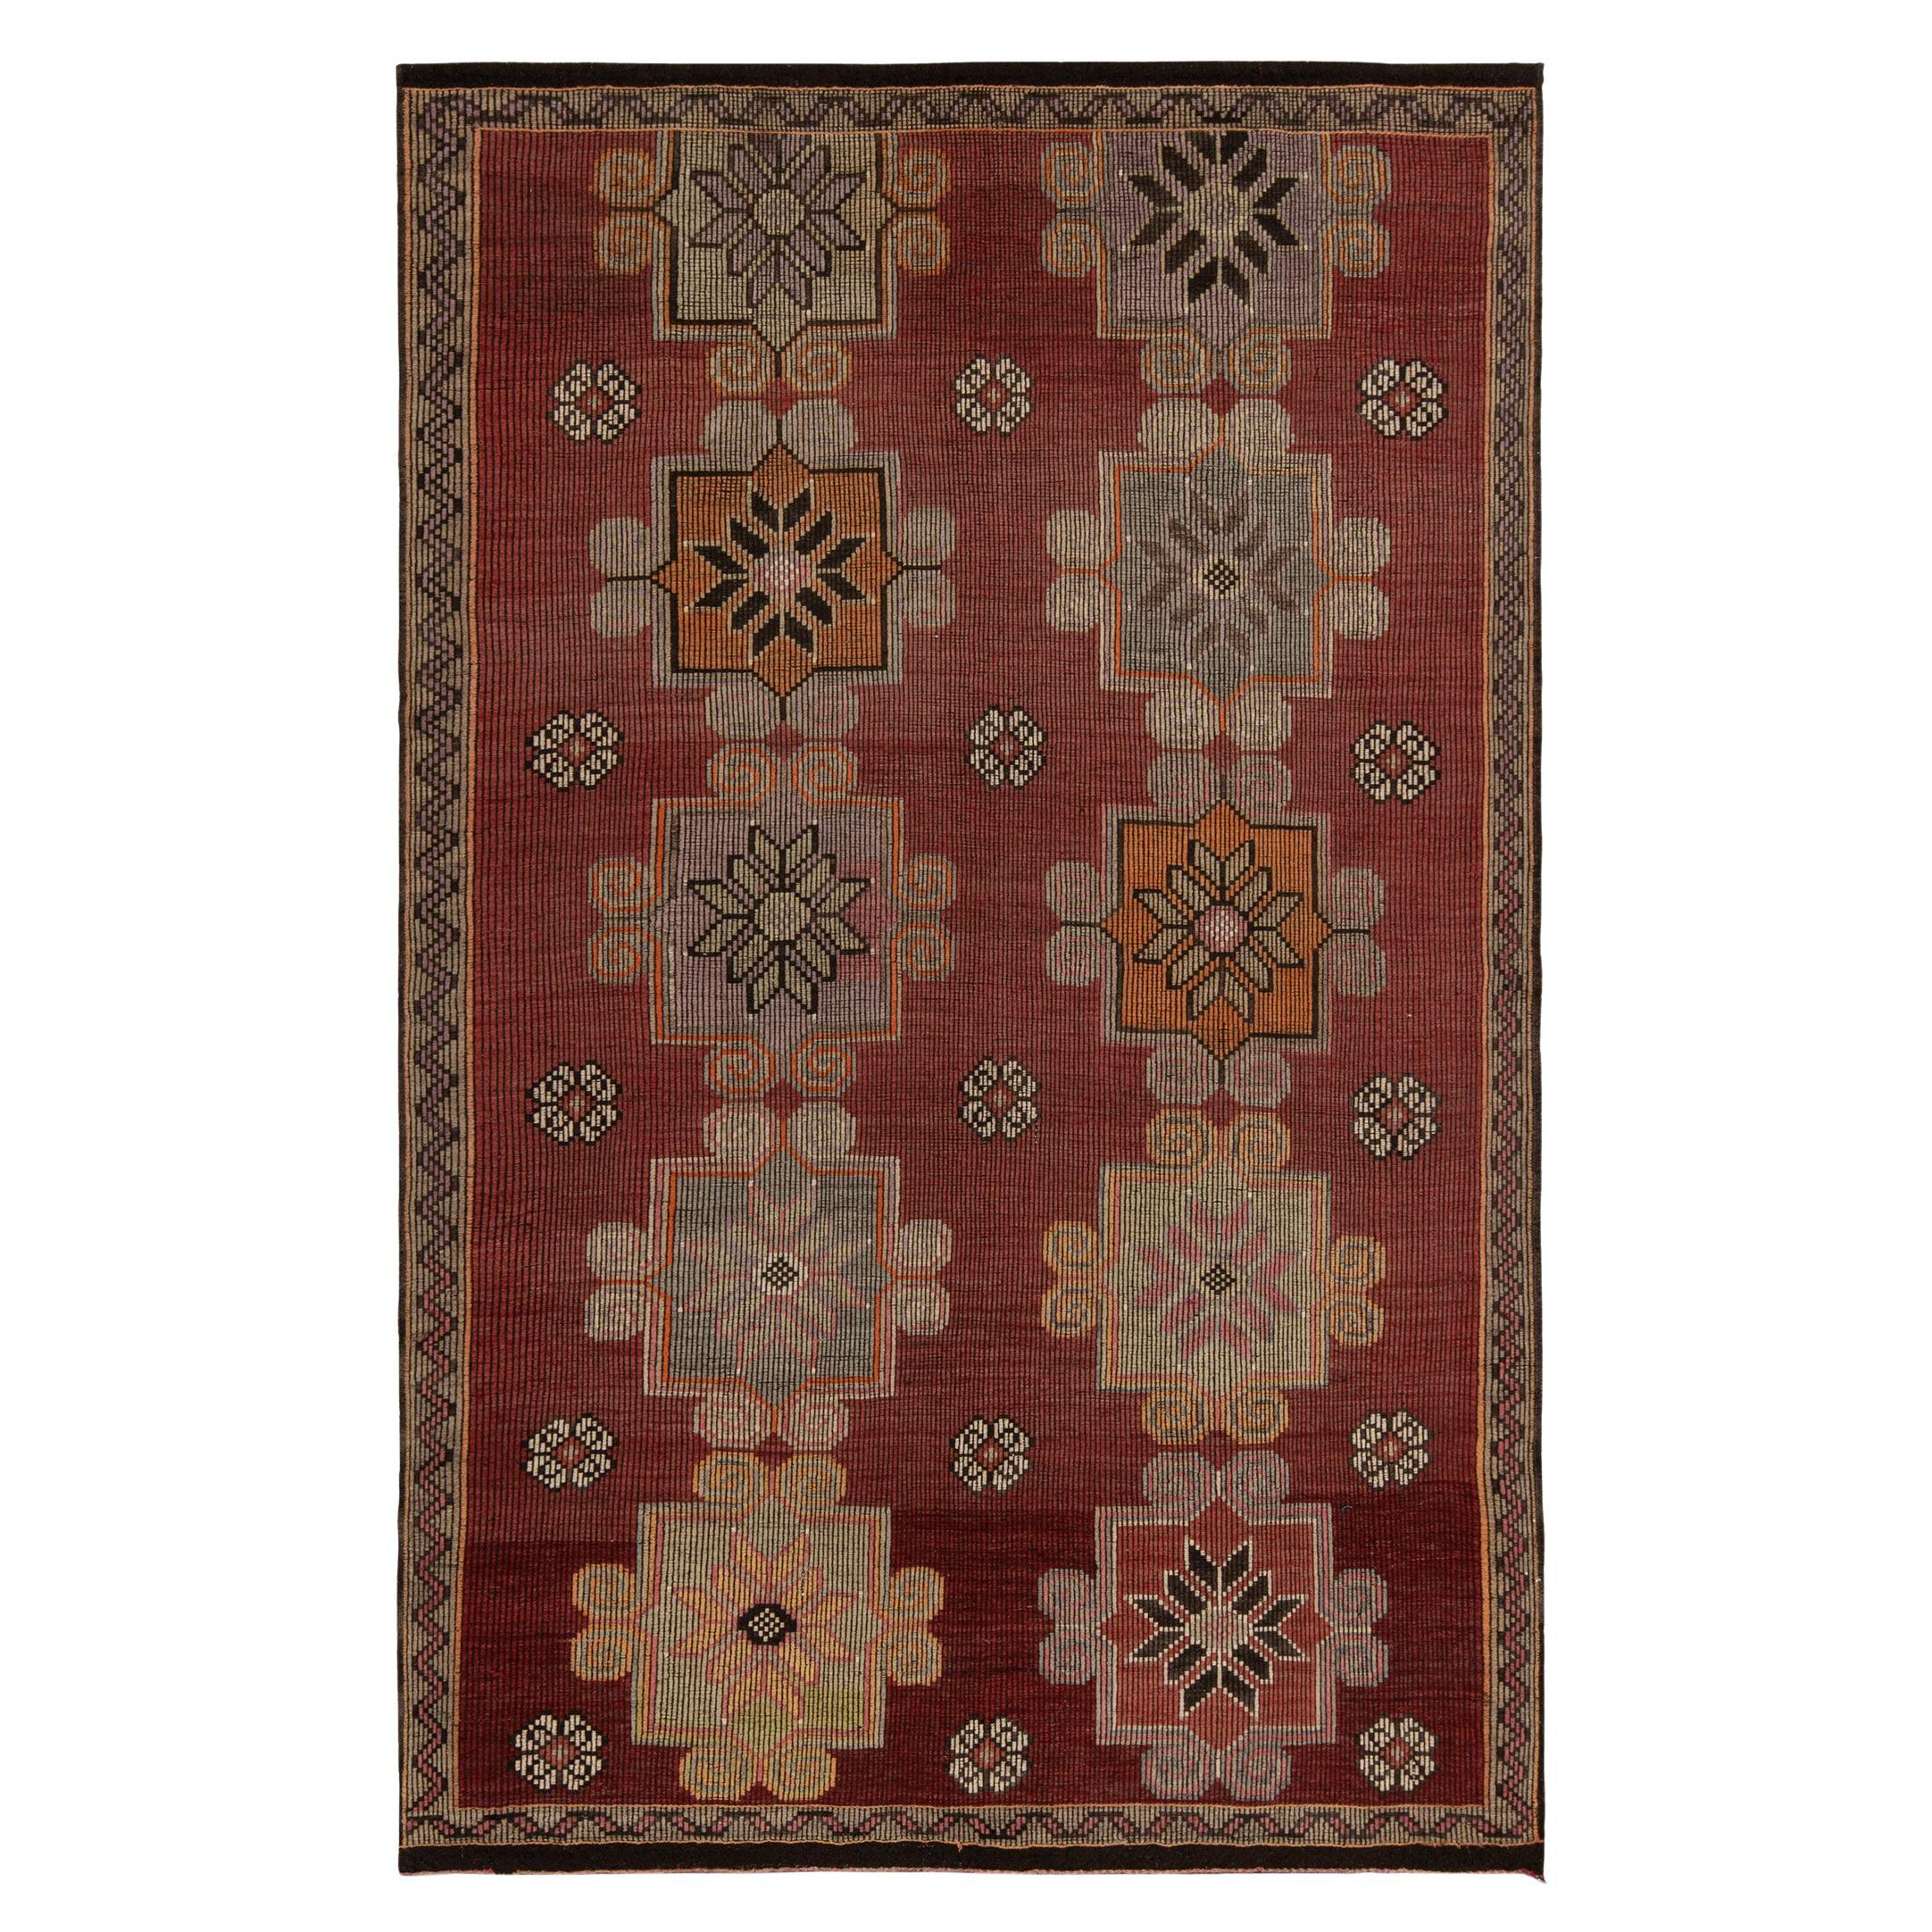 Vintage-Kelimteppich im roten, braunen Stammesmuster mit geometrischem Blumenmuster von Teppich & Kelim